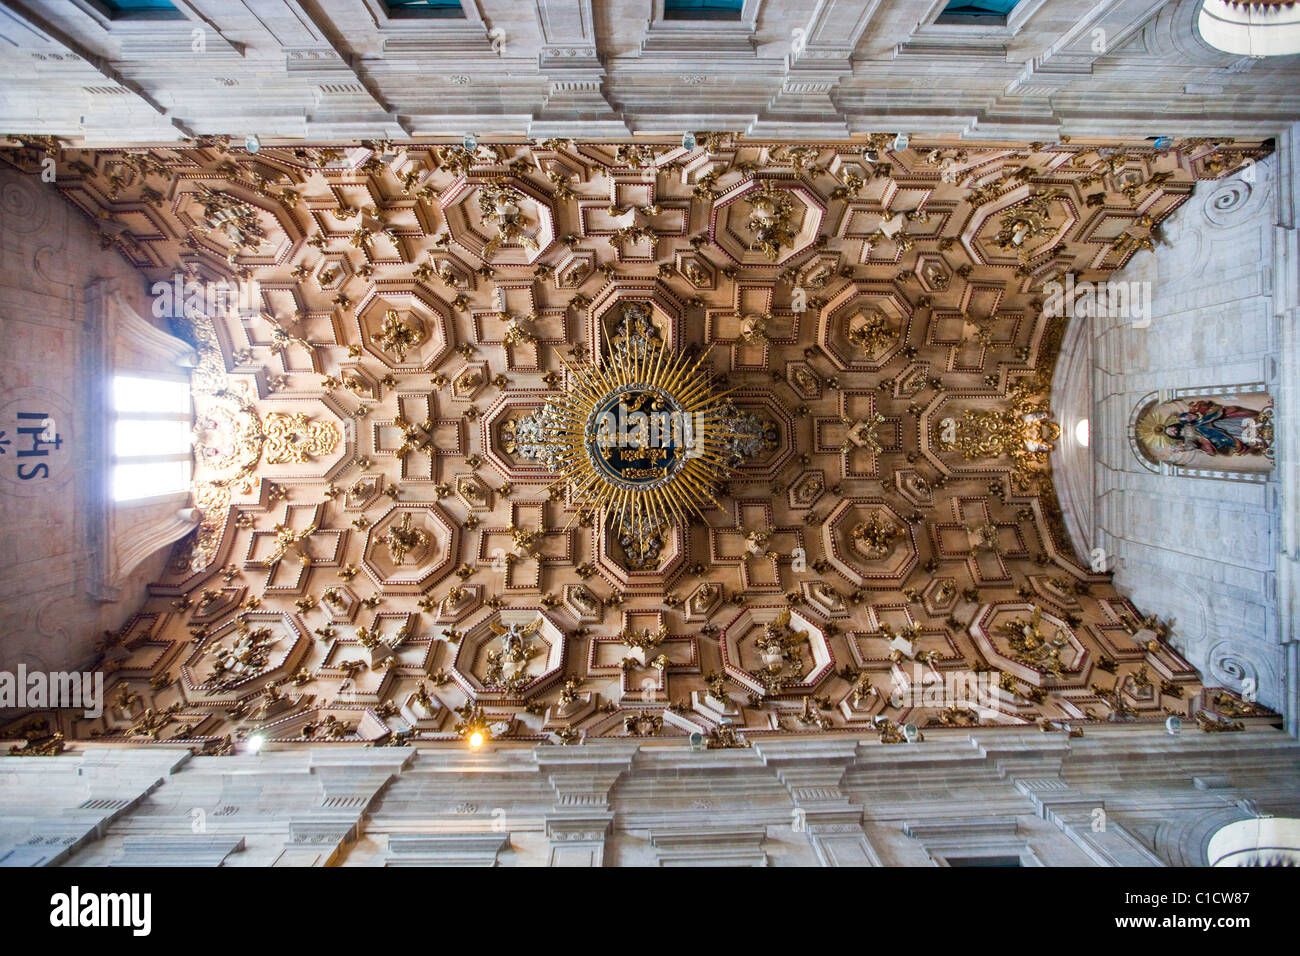 Plafond de la cathédrale de Salvador, Salvador, Brésil Banque D'Images